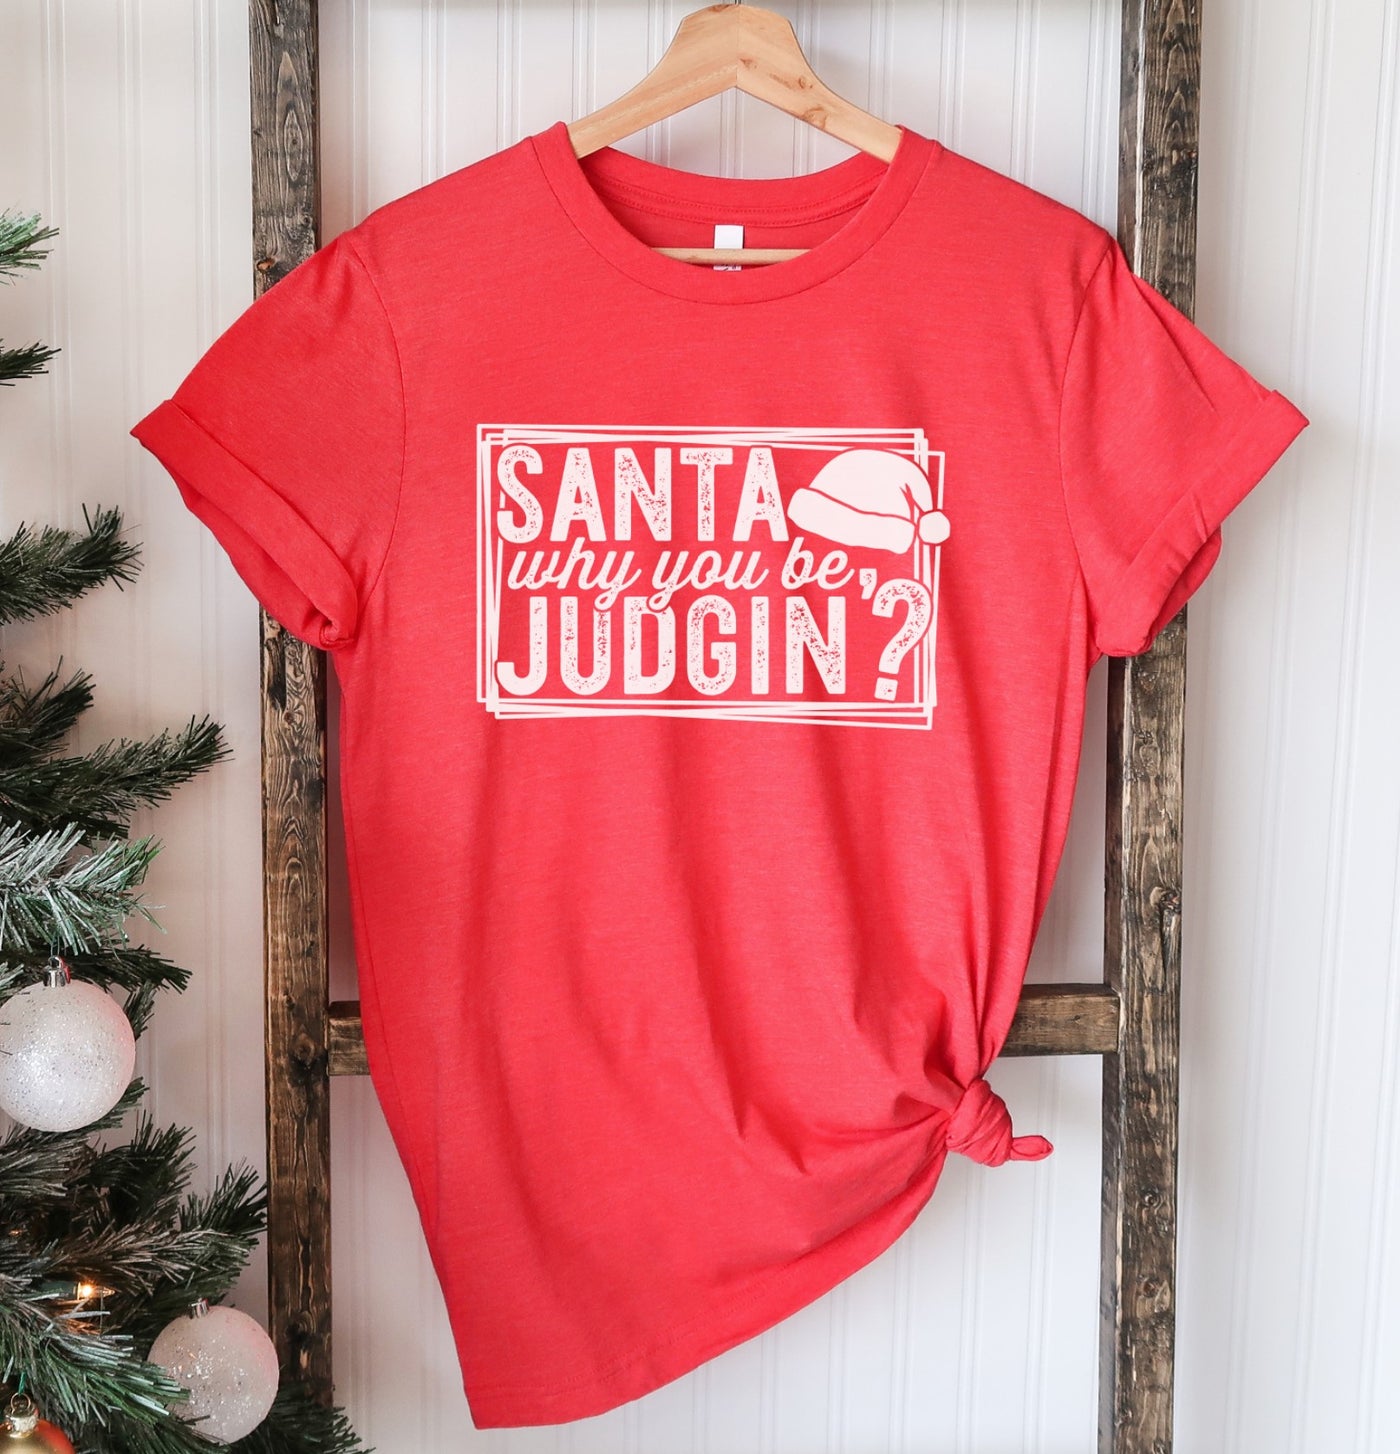 Santa Why you be judgin